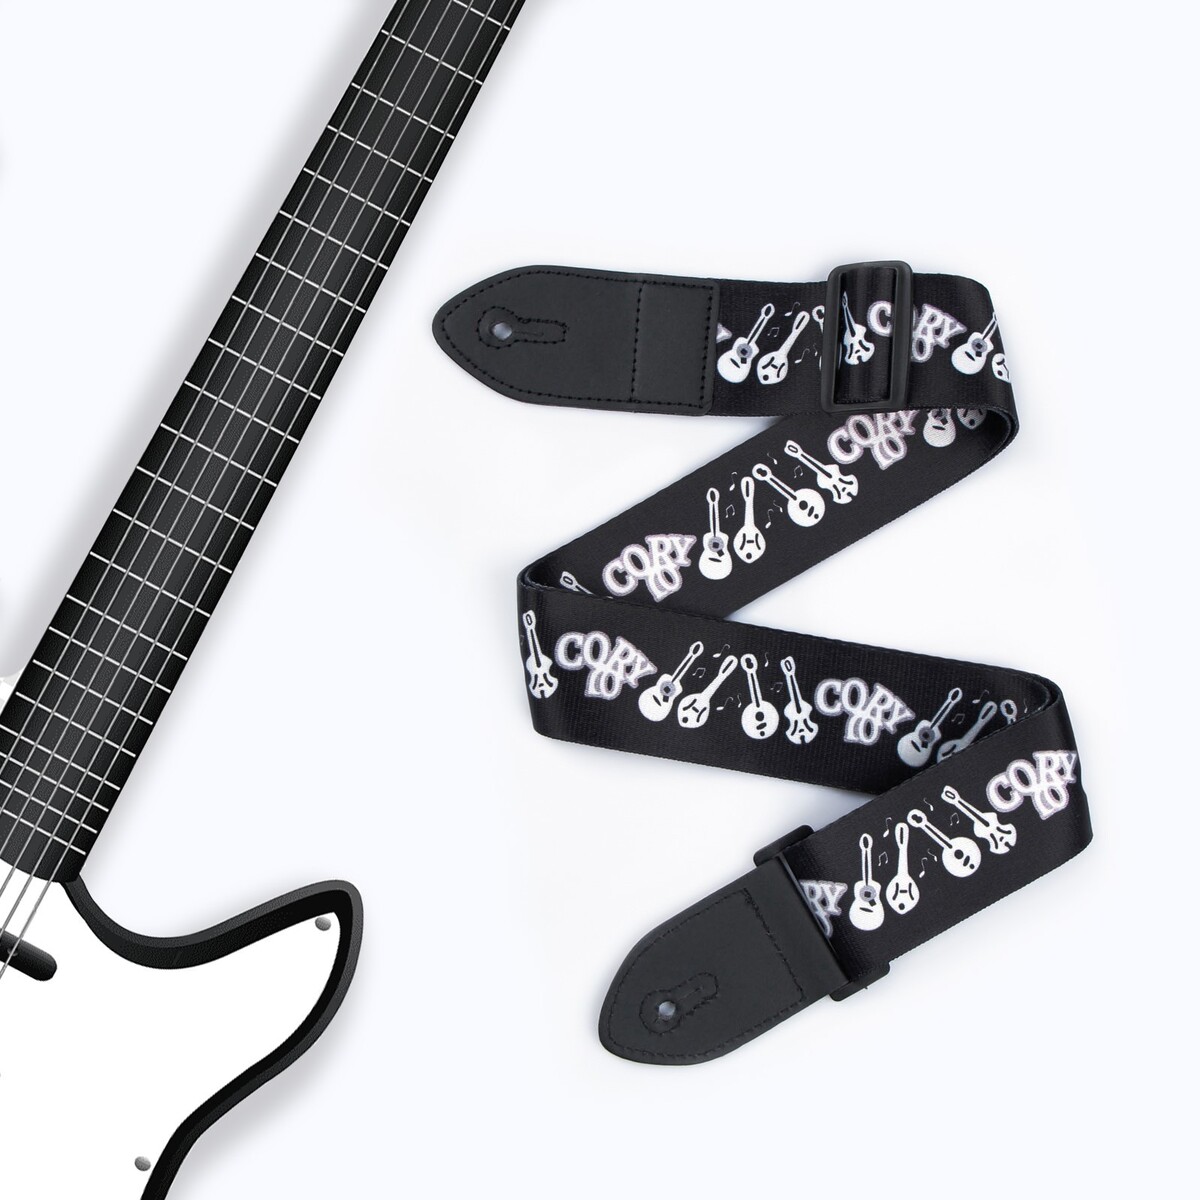 Ремень для гитары, черный, инструменты, длина 60-117 см, ширина 5 см набор струн для классической гитары 6шт нейлон